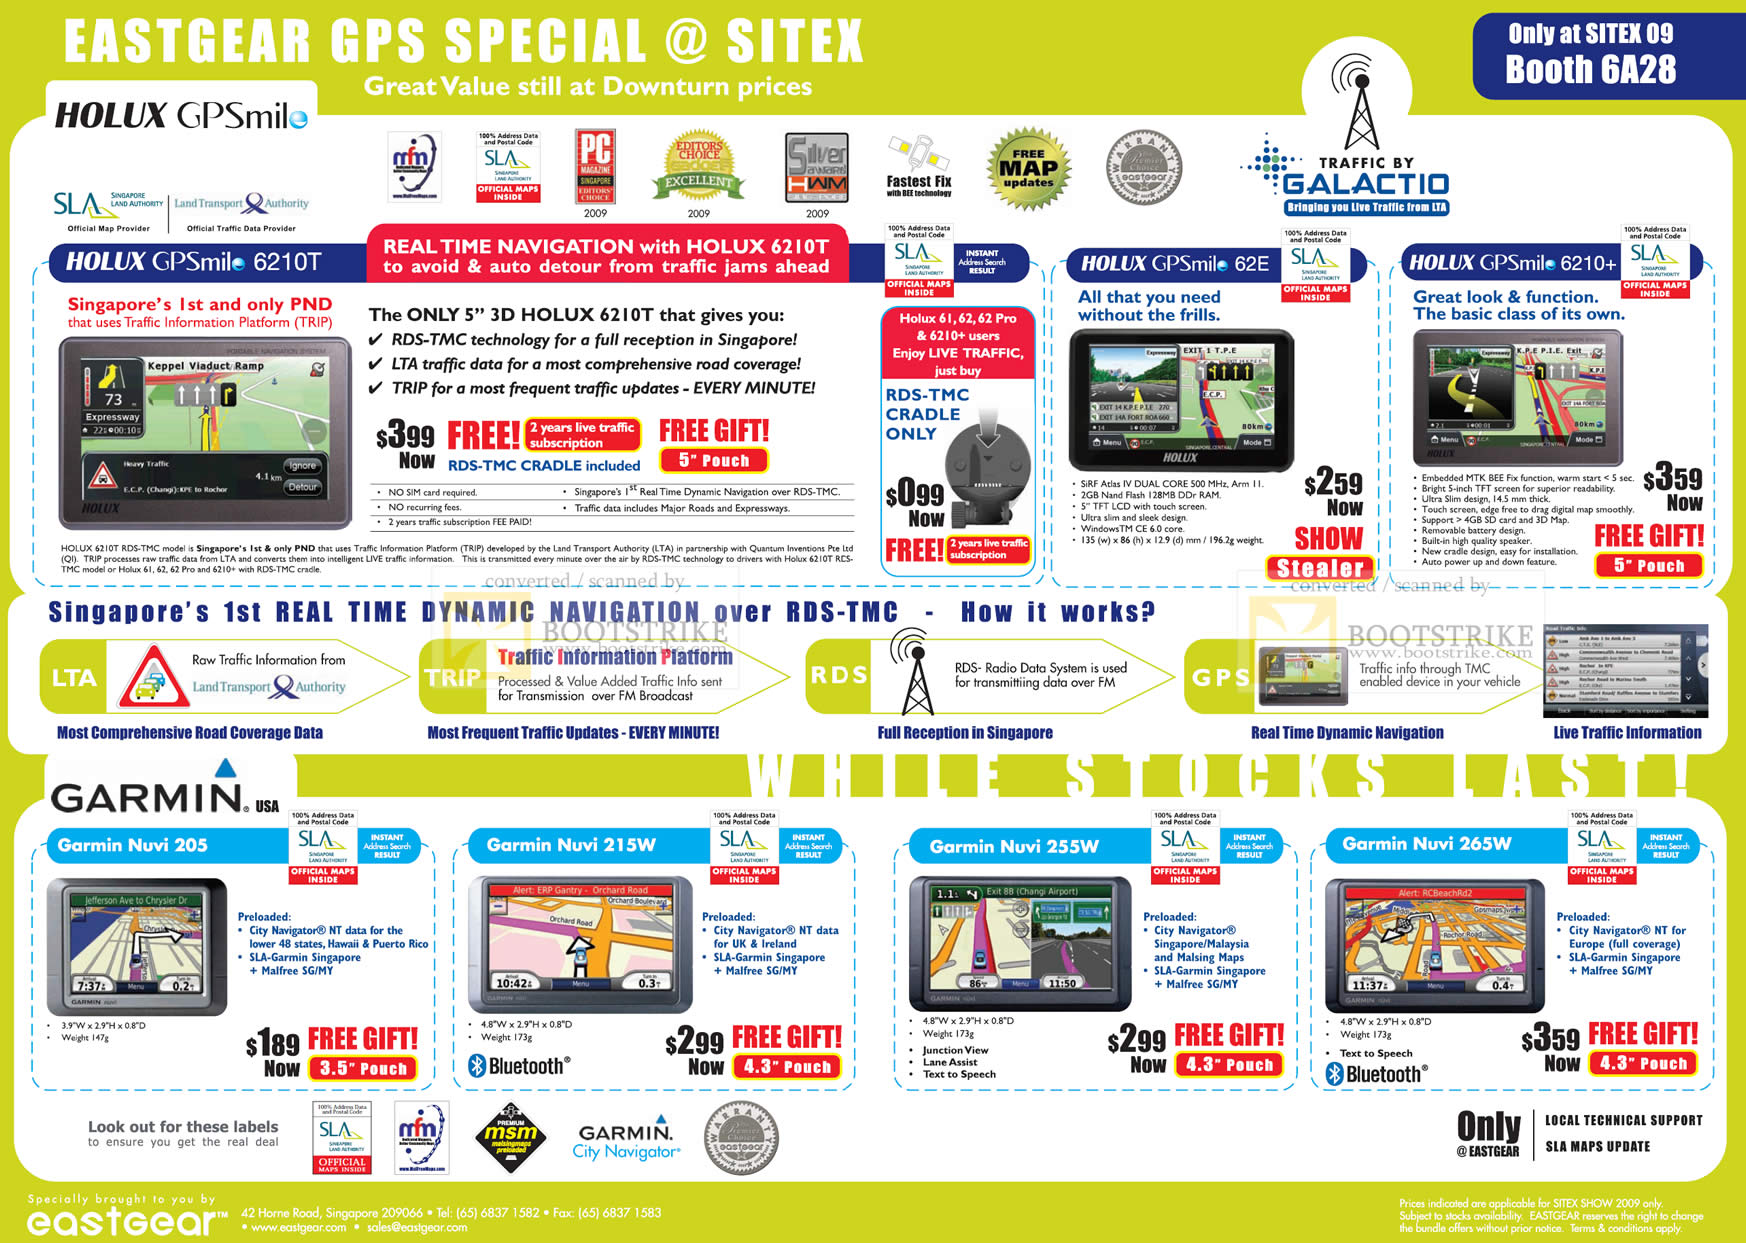 Sitex 2009 price list image brochure of Garmin Nuvi 205 215W 255W 265W Holux GPSmile GPS 62E 6210 6210T